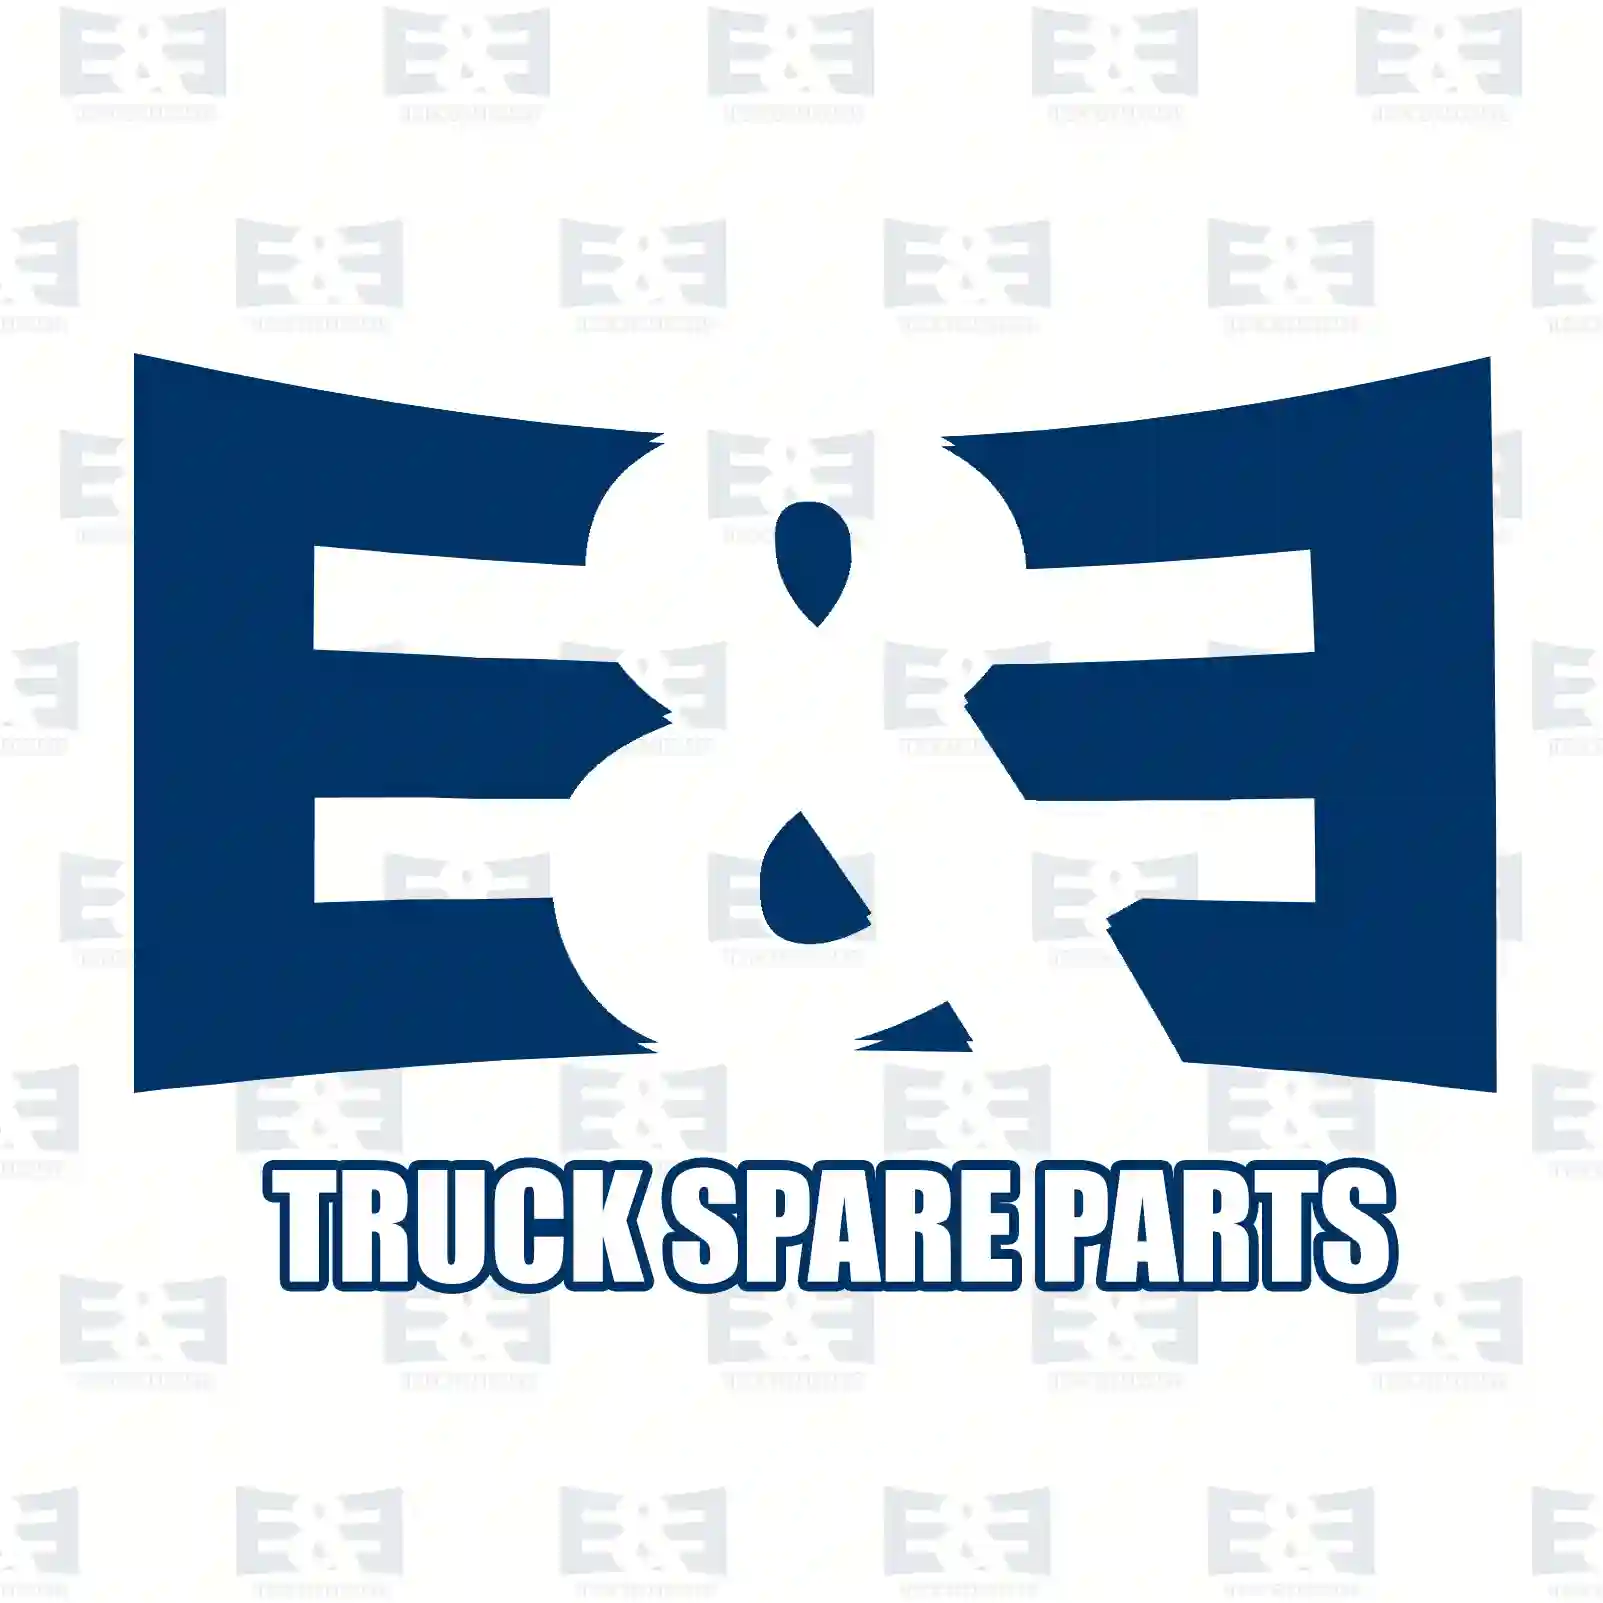 Brake caliper, right, 2E2297292, 42530363, 42536175, 42536627, 42548190, 504074544, 5001856072, 5001867460, 5001874365 ||  2E2297292 E&E Truck Spare Parts | Truck Spare Parts, Auotomotive Spare Parts Brake caliper, right, 2E2297292, 42530363, 42536175, 42536627, 42548190, 504074544, 5001856072, 5001867460, 5001874365 ||  2E2297292 E&E Truck Spare Parts | Truck Spare Parts, Auotomotive Spare Parts